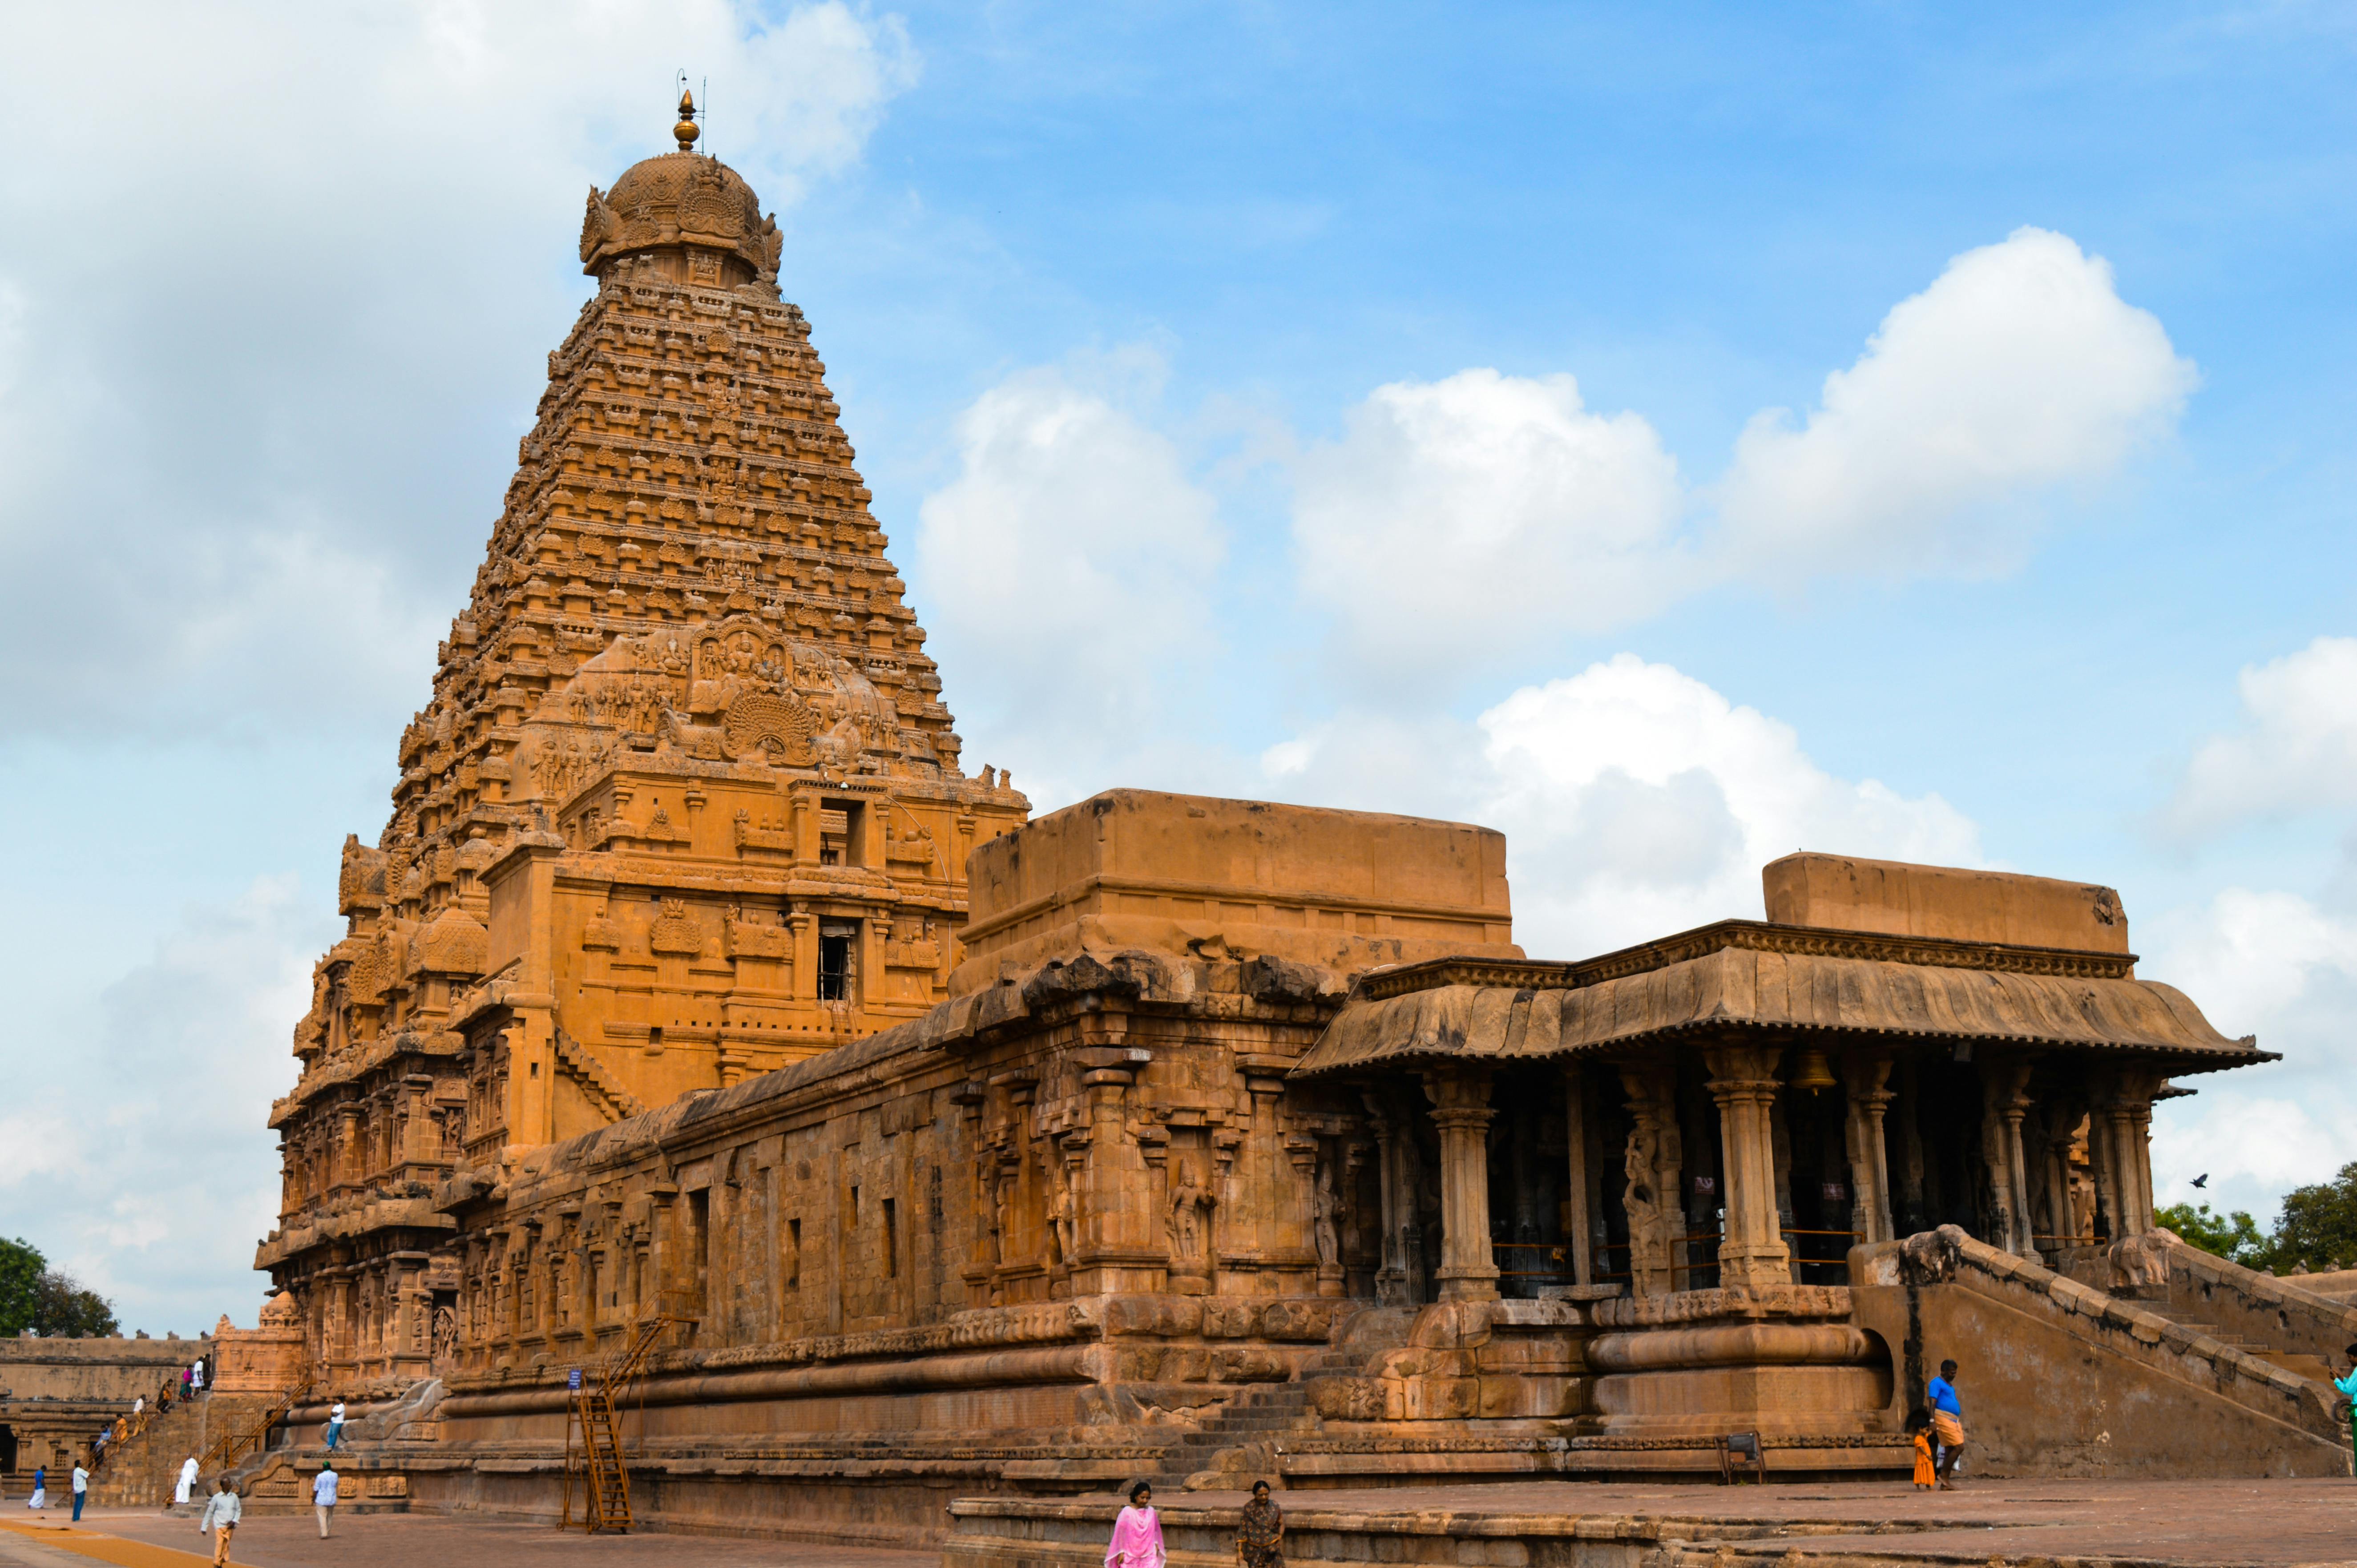 60+ Free Tamil Nadu & India Images - Pixabay